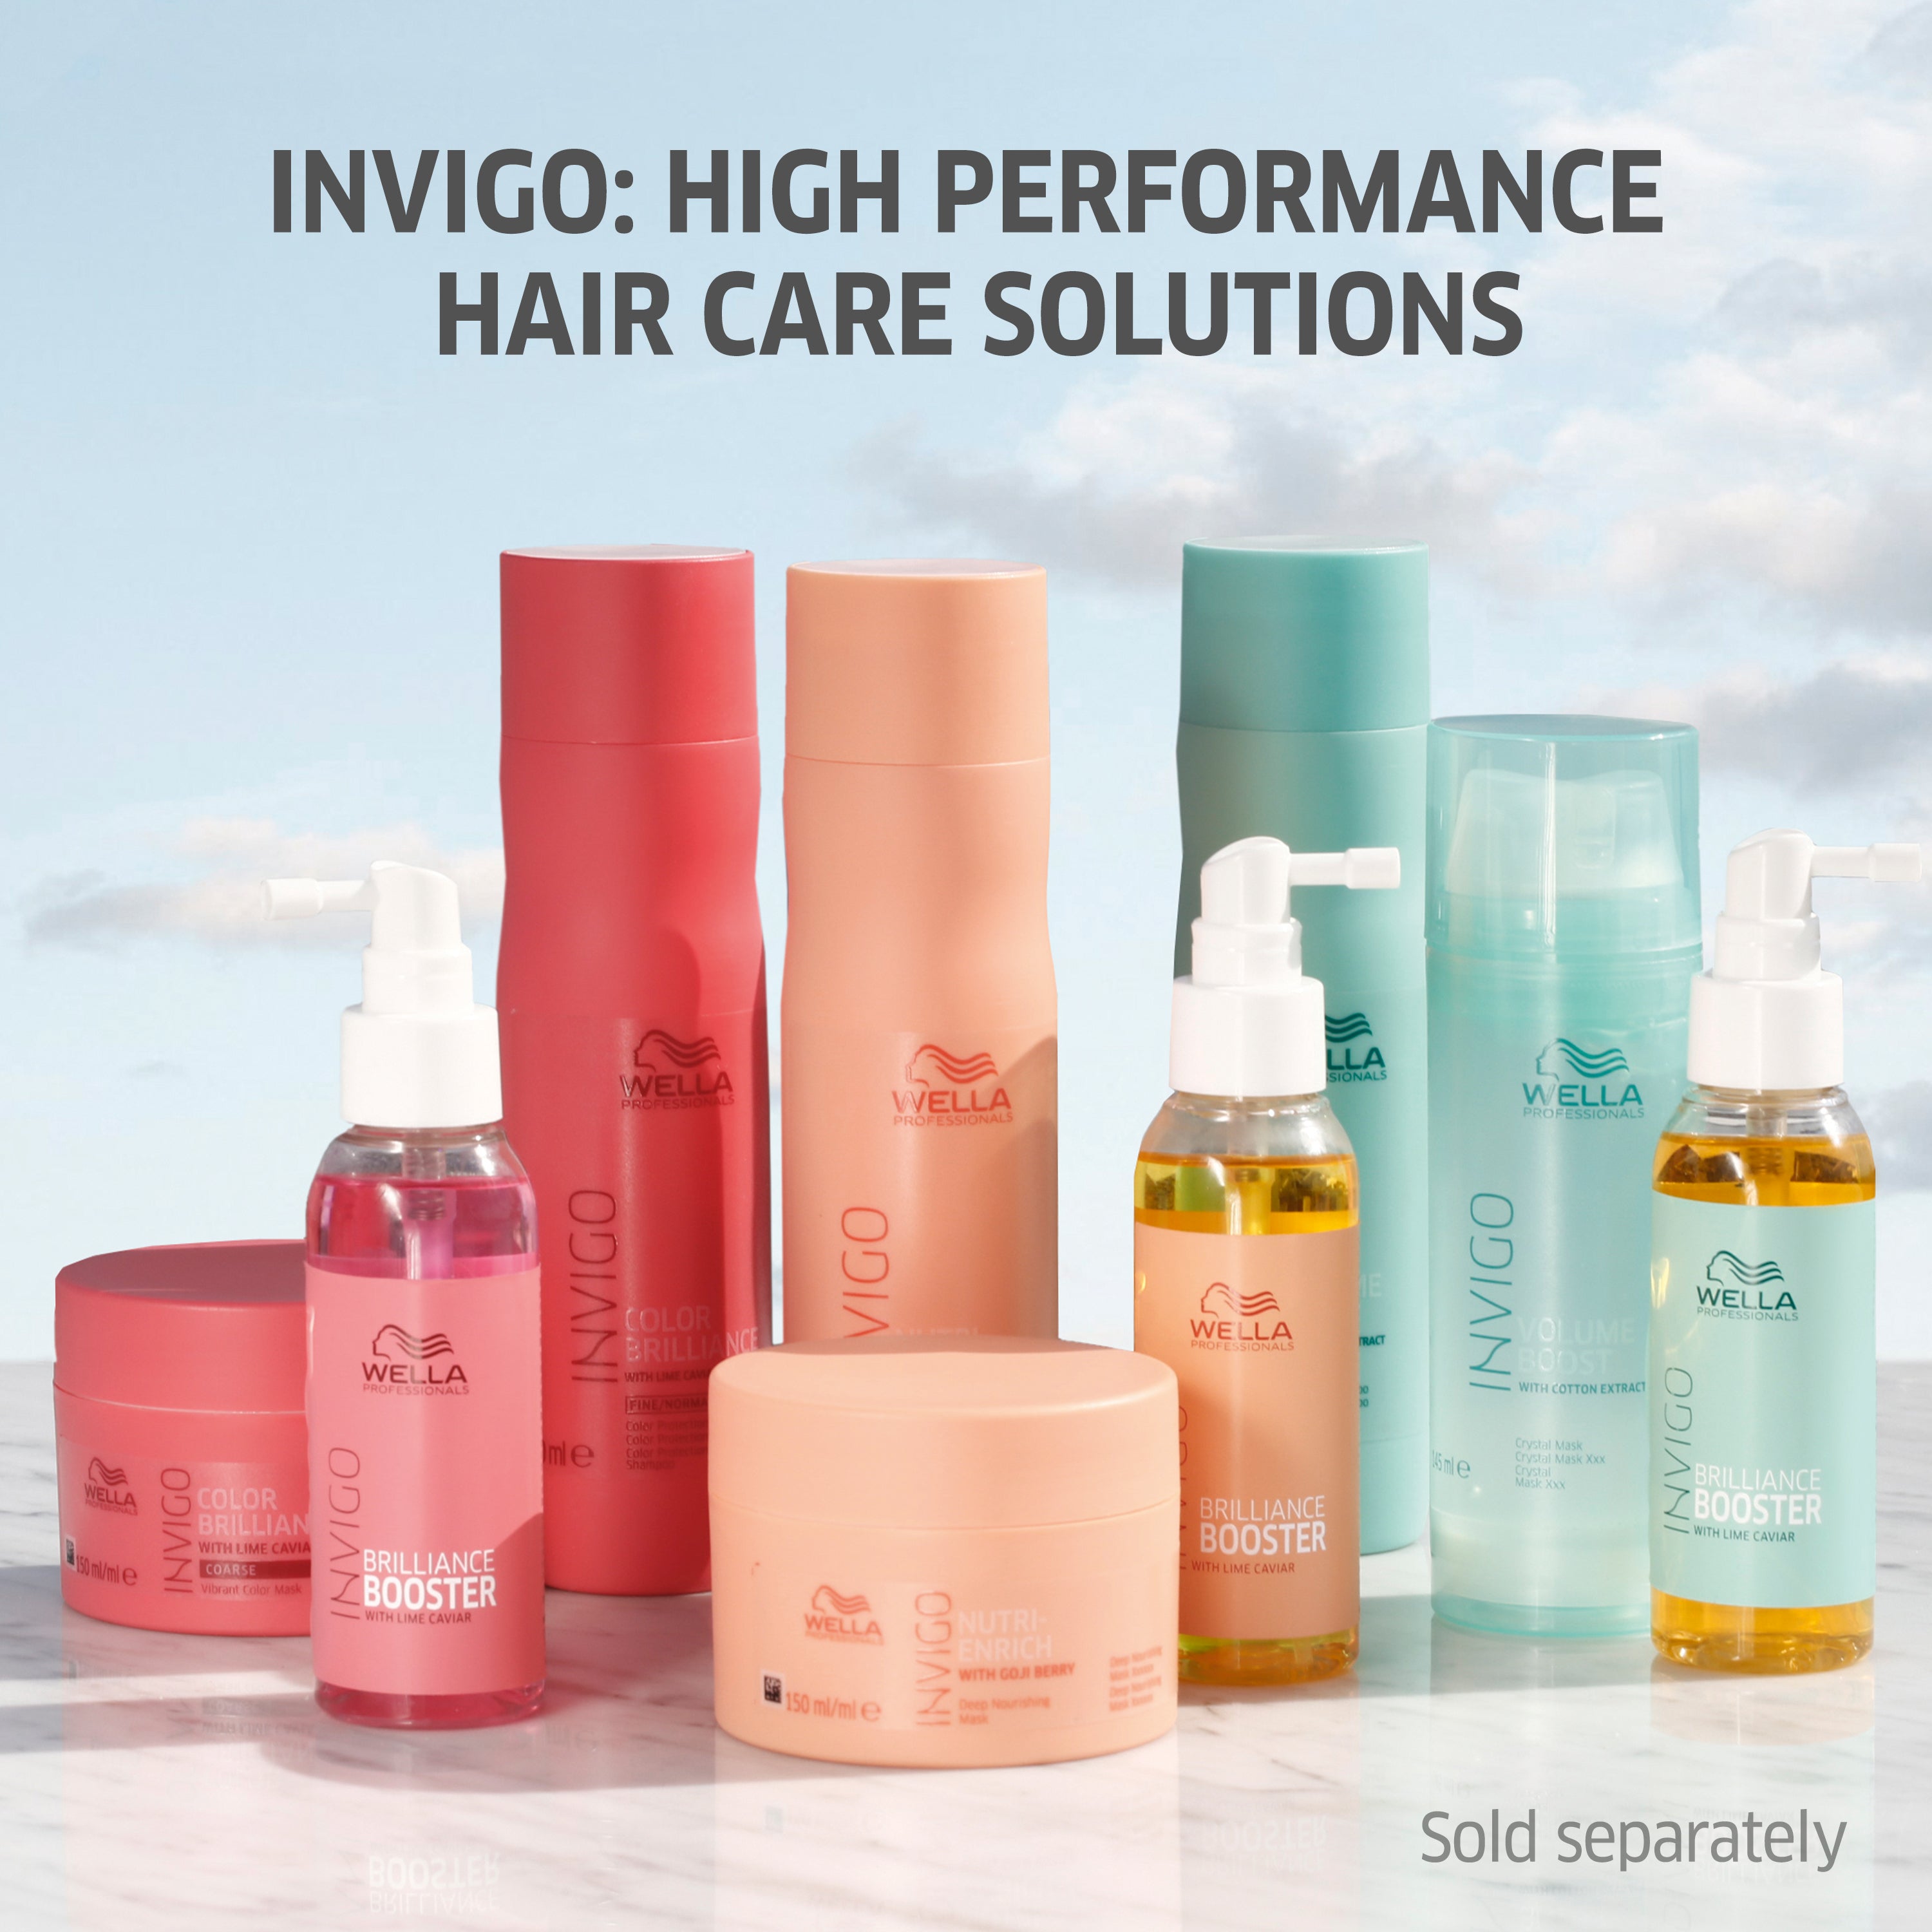 Wella Professional Invigo Shampoo 1000 ML Senso Calm